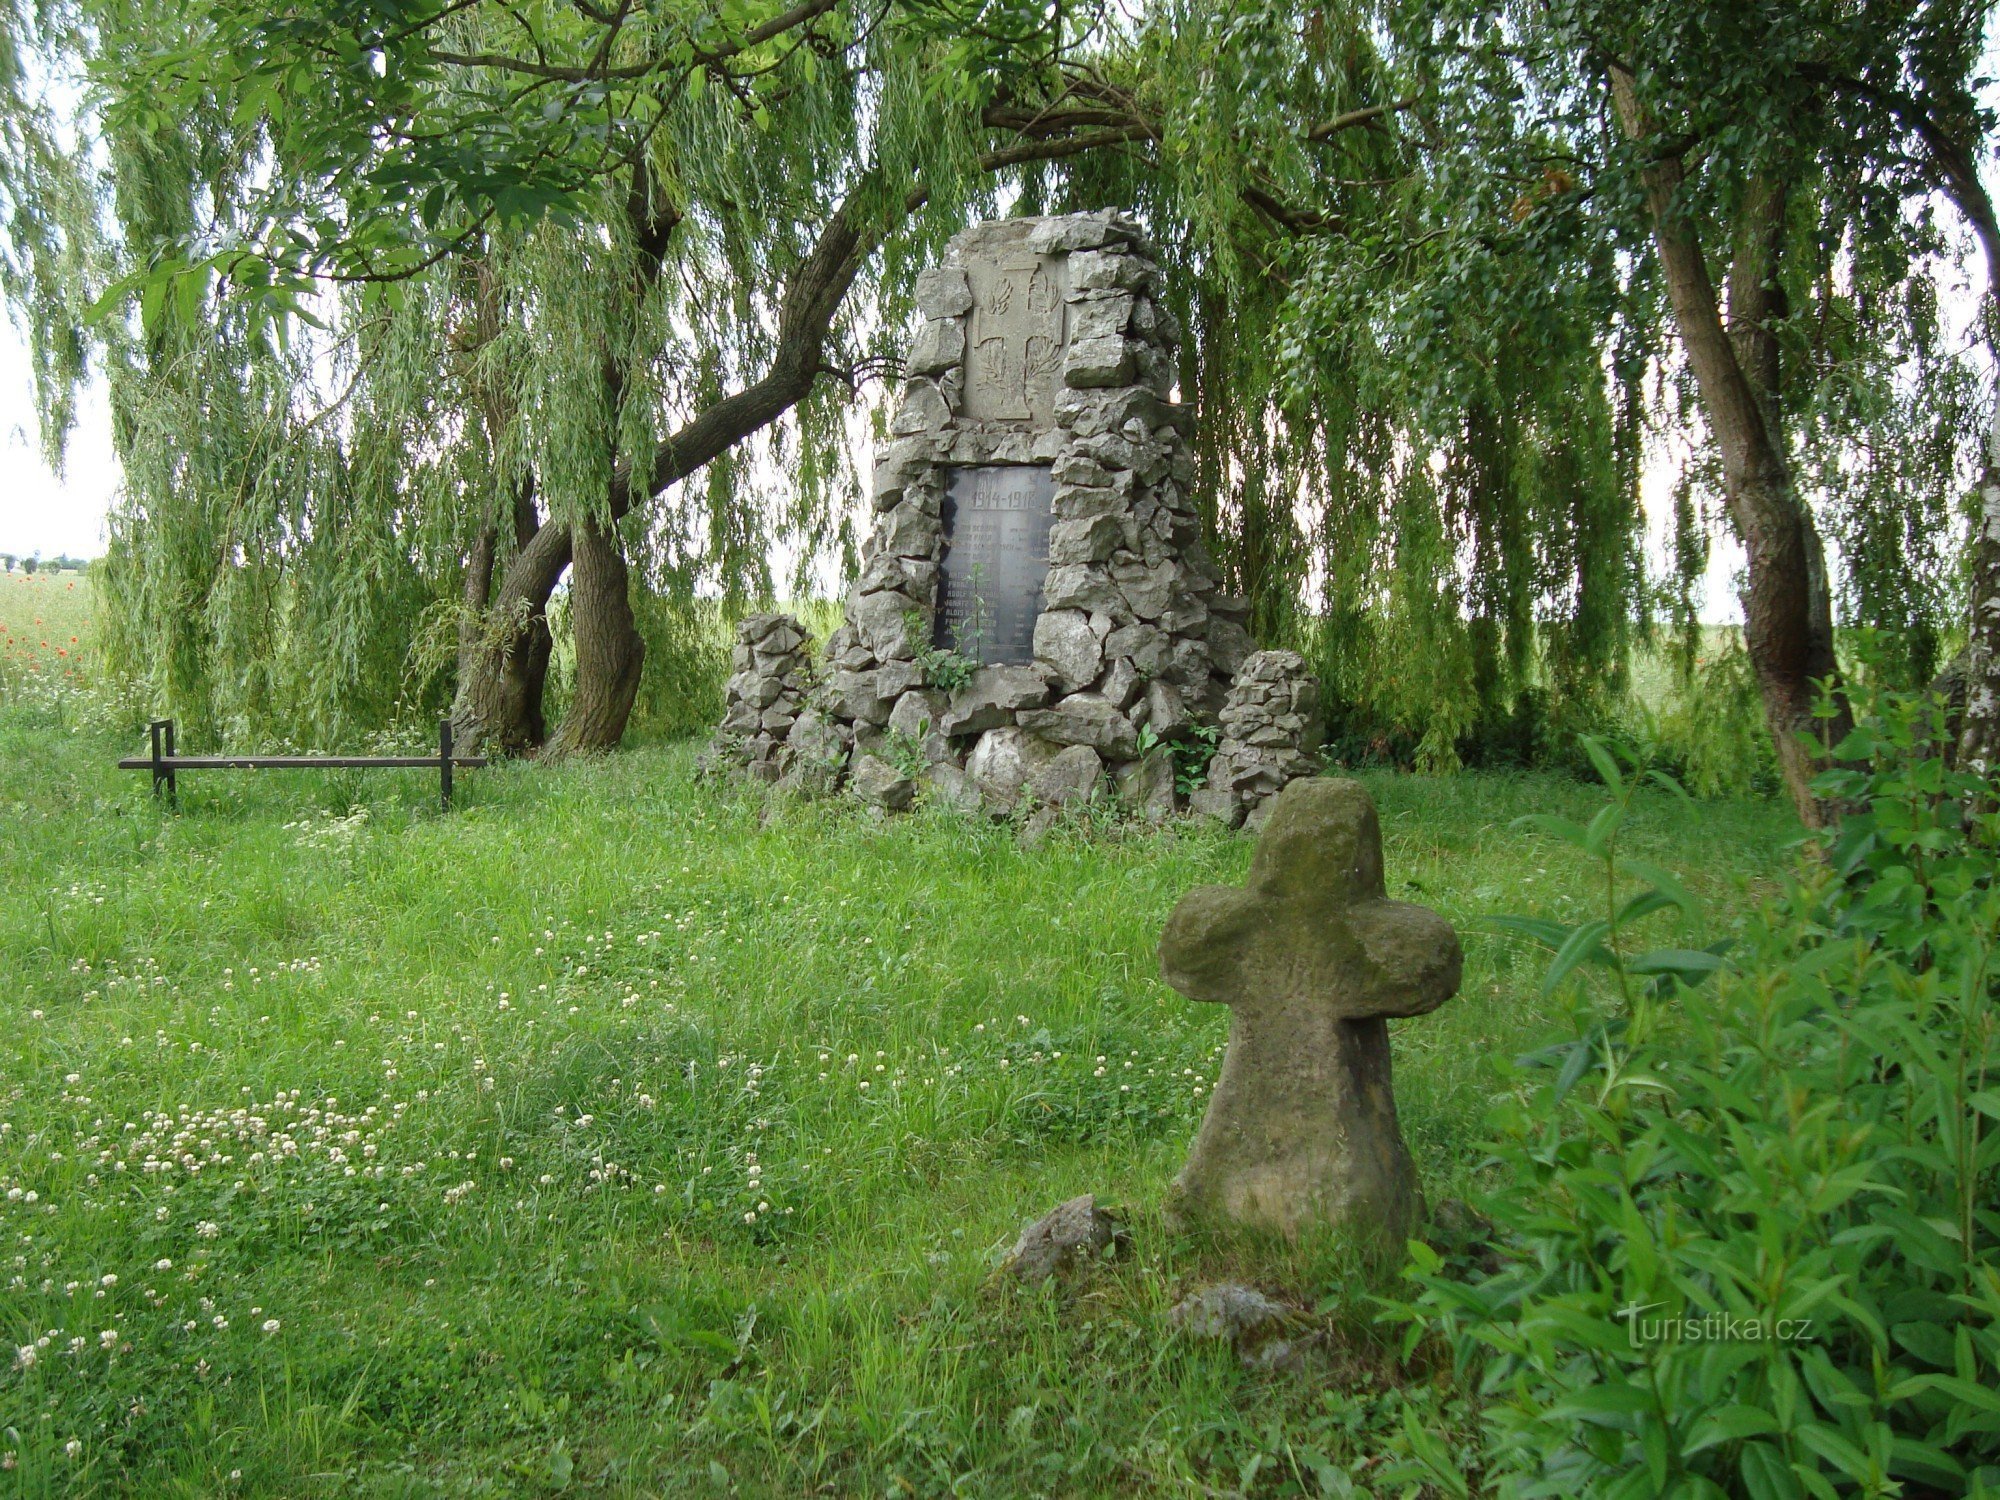 Nedvězí-parčík no início da aldeia com uma cruz da paz e um monumento às vítimas da Primeira Guerra Mundial